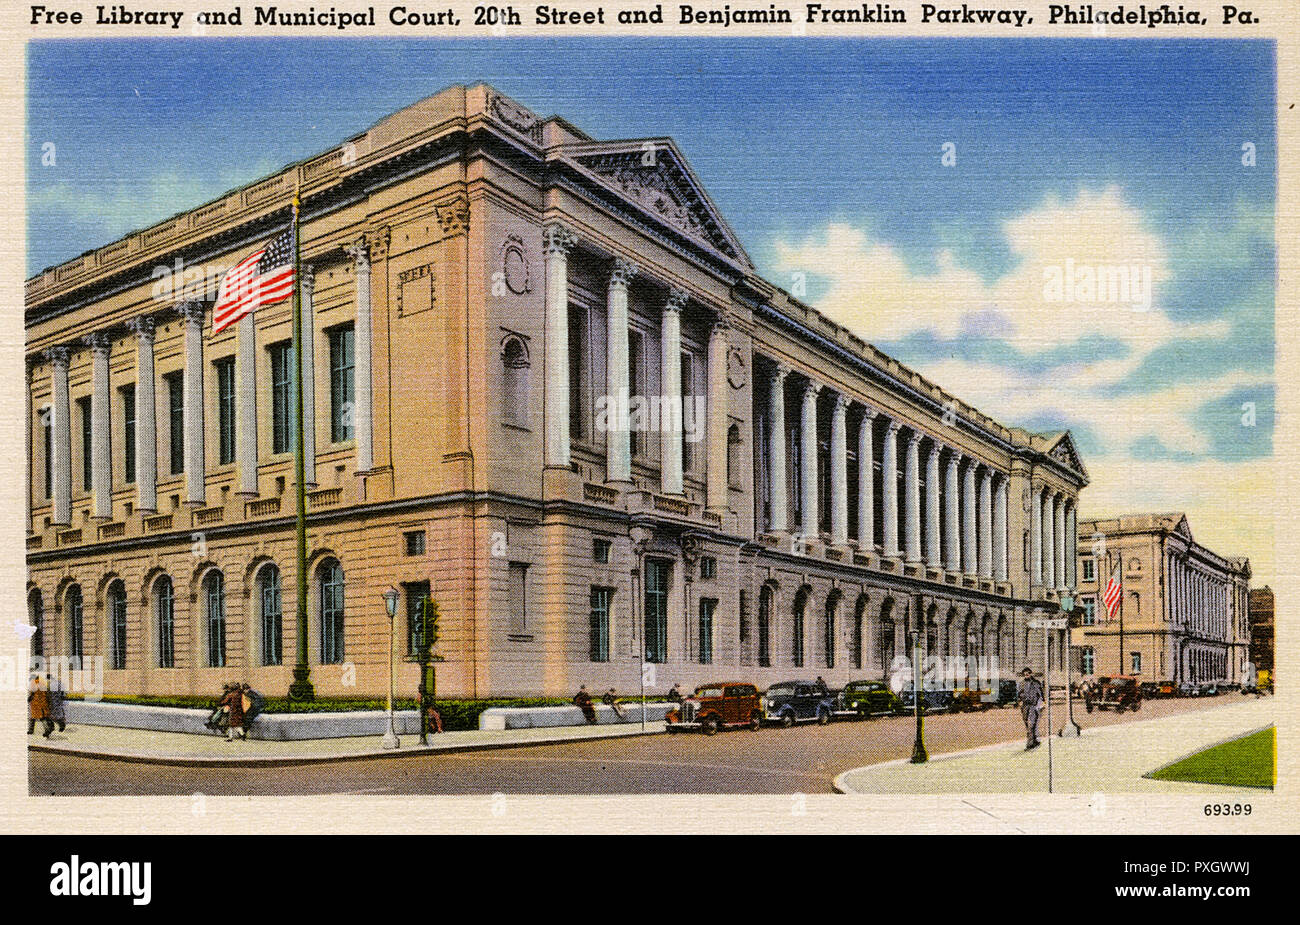 Bibliothèque gratuite et Cour municipale, 20th Street, Philadelphie Banque D'Images